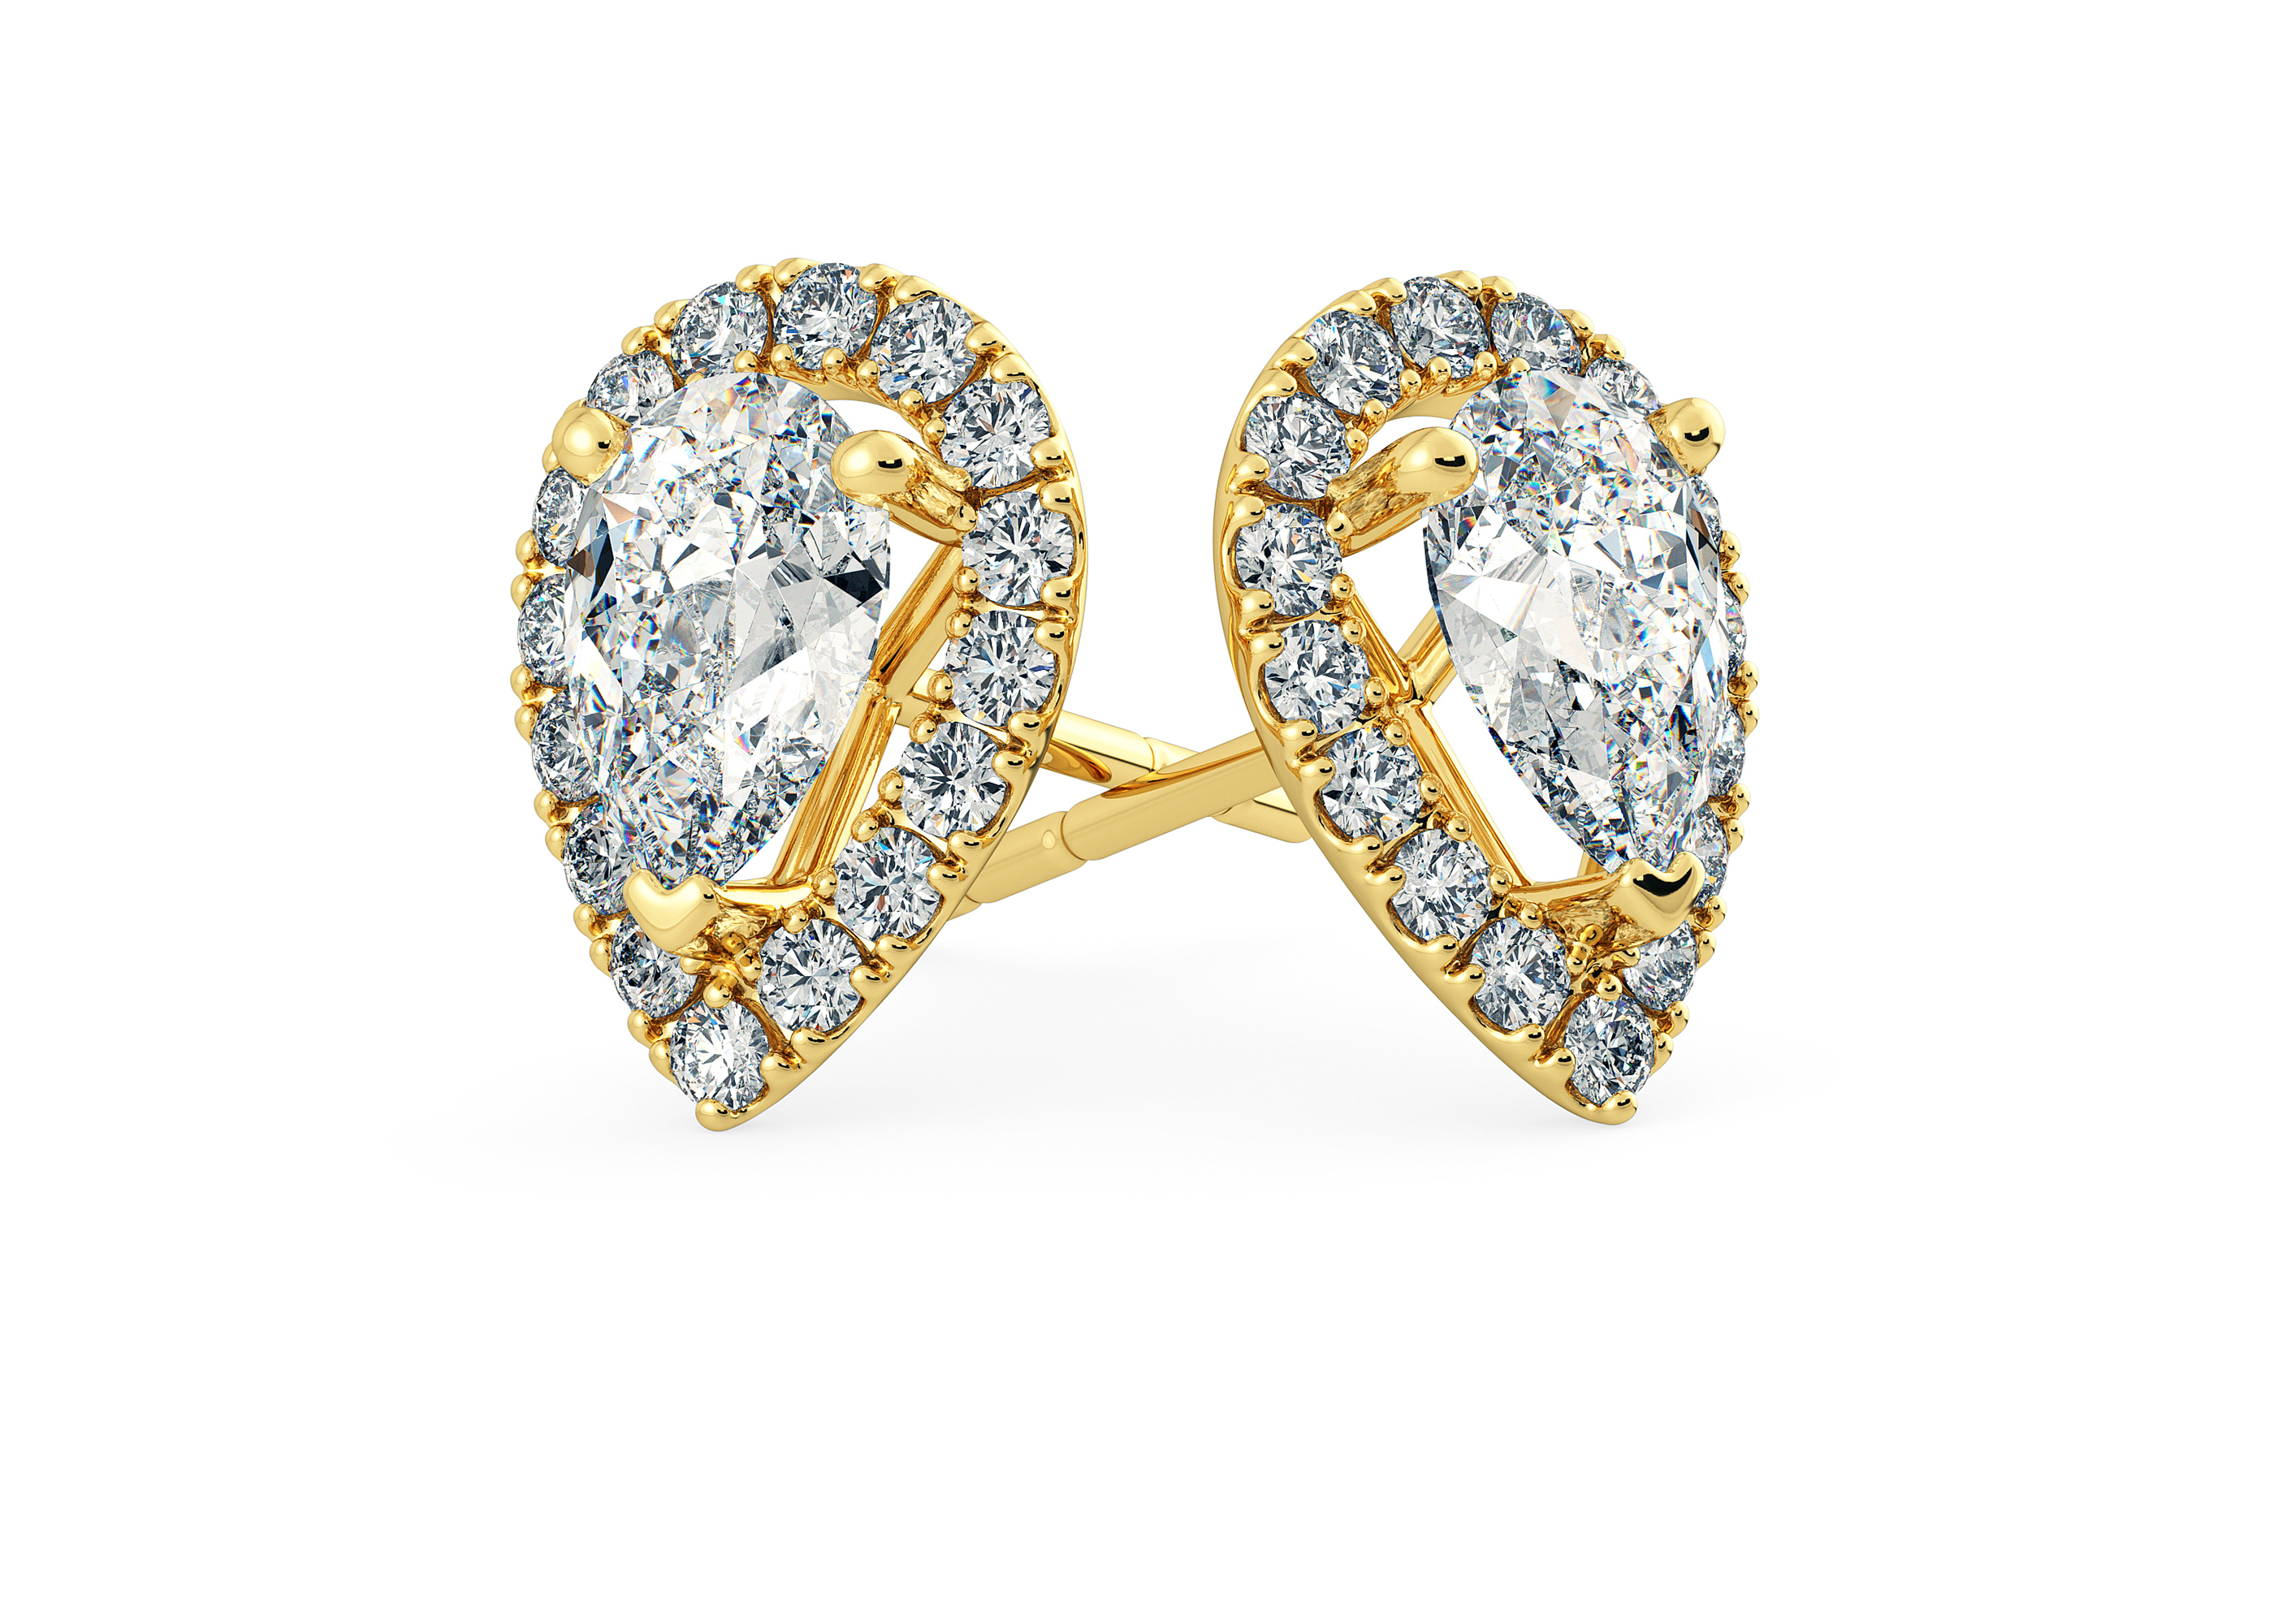 Bijou Pear Diamond Stud Earrings in 18K Yellow Gold with Butterfly Backs